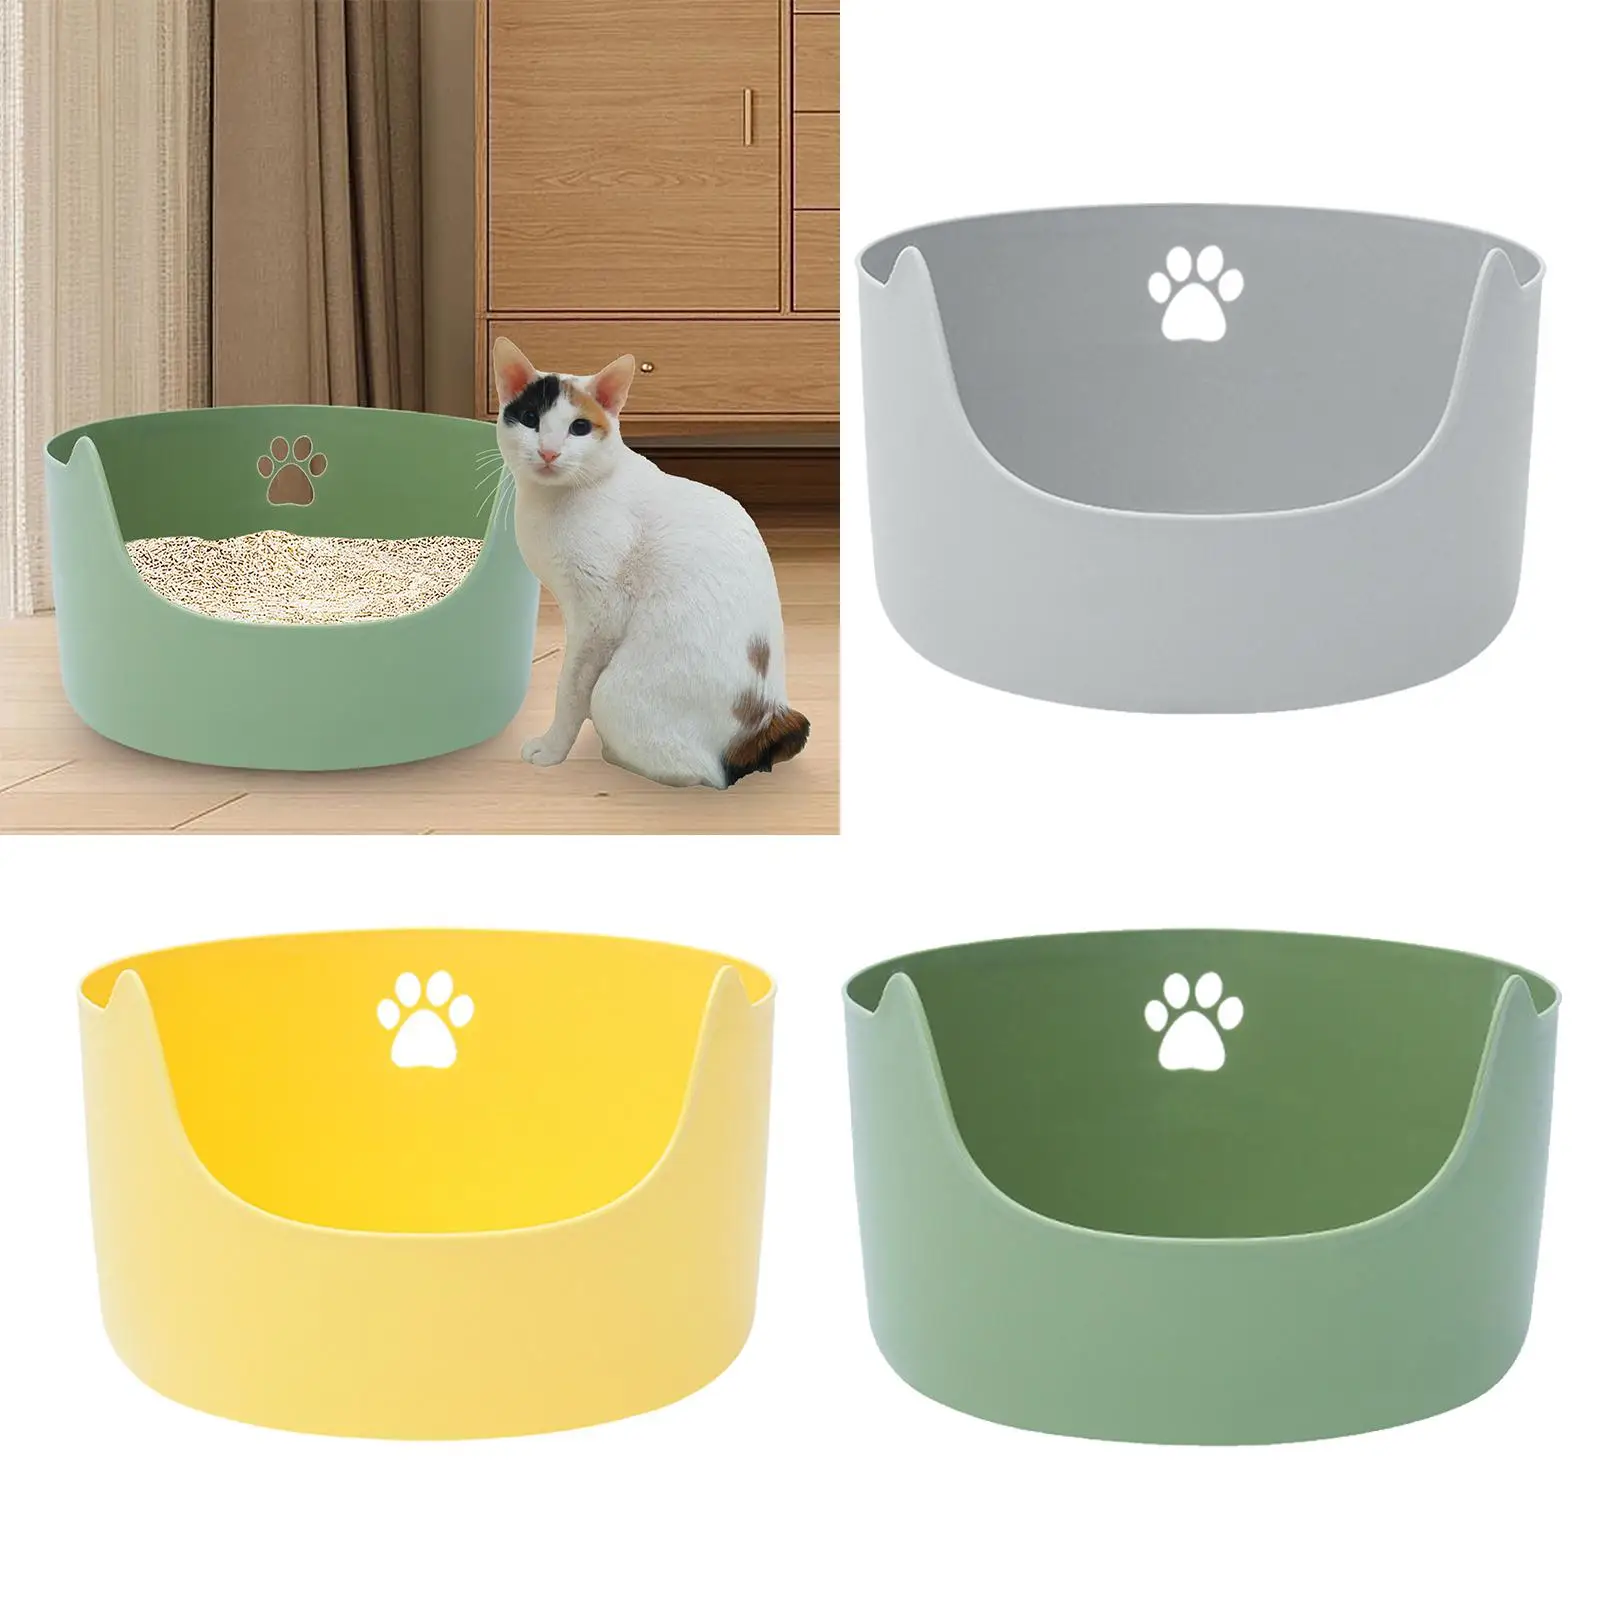 Cat Litter Box Open Top Pet Litter Tray for Small Medium Cats Pets Supplies